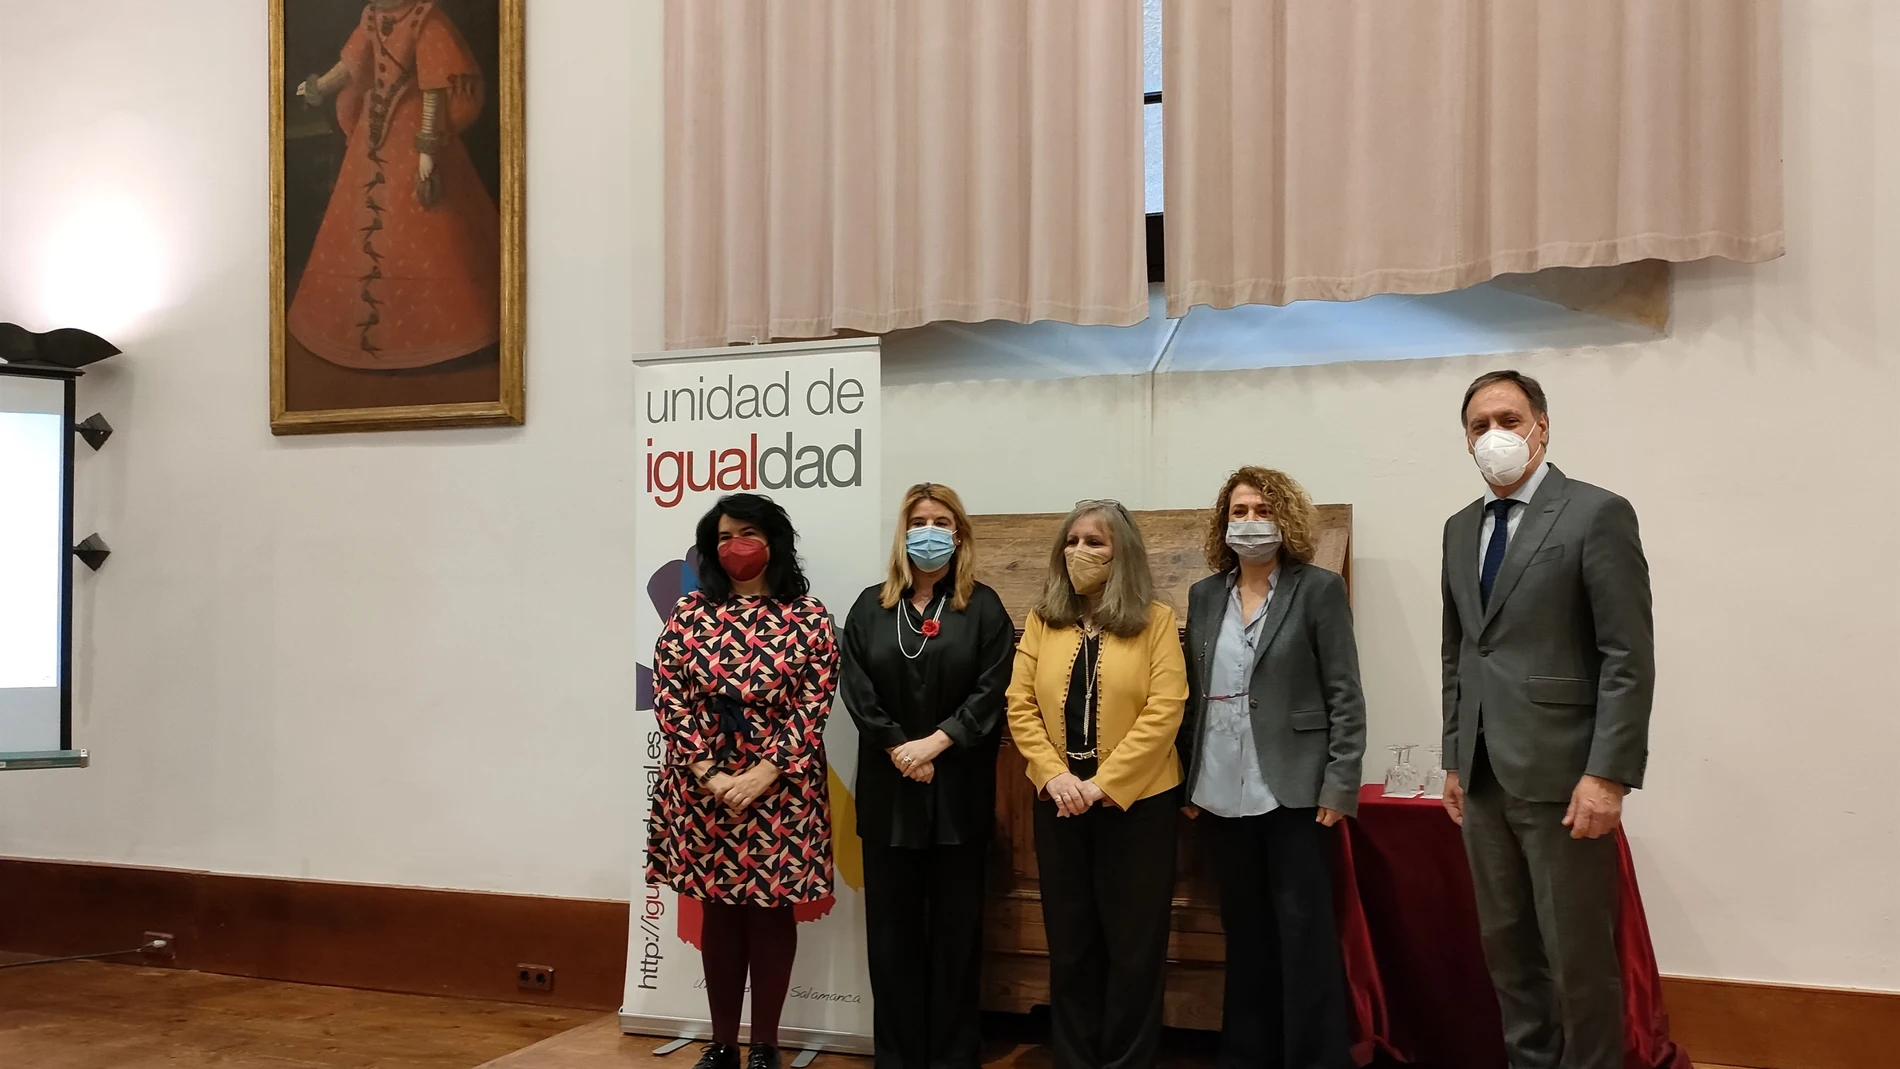 La directora de la Mujer, Ruth Pindado, y el alcalde de Salamanca, Carlos García Carbayo, participan en la inauguración de las jornadas de la Universidad